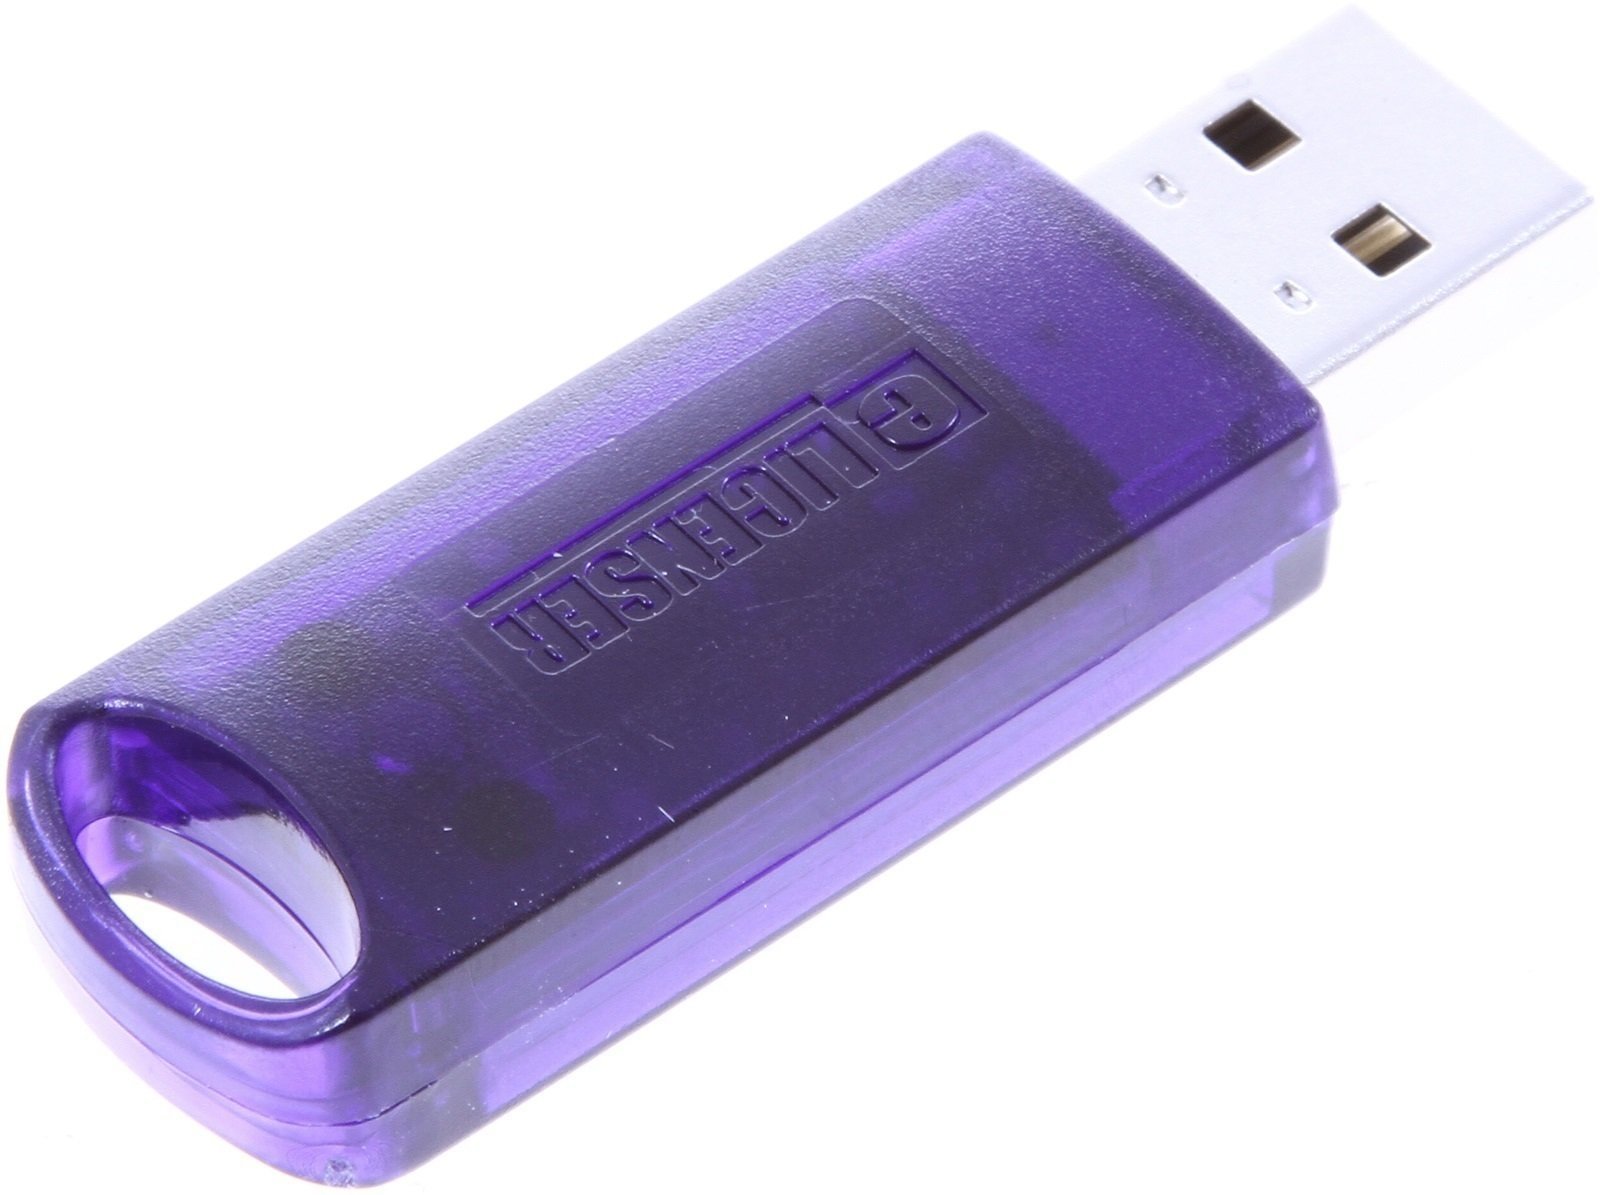 Licentie-element Steinberg Key USB eLicenser